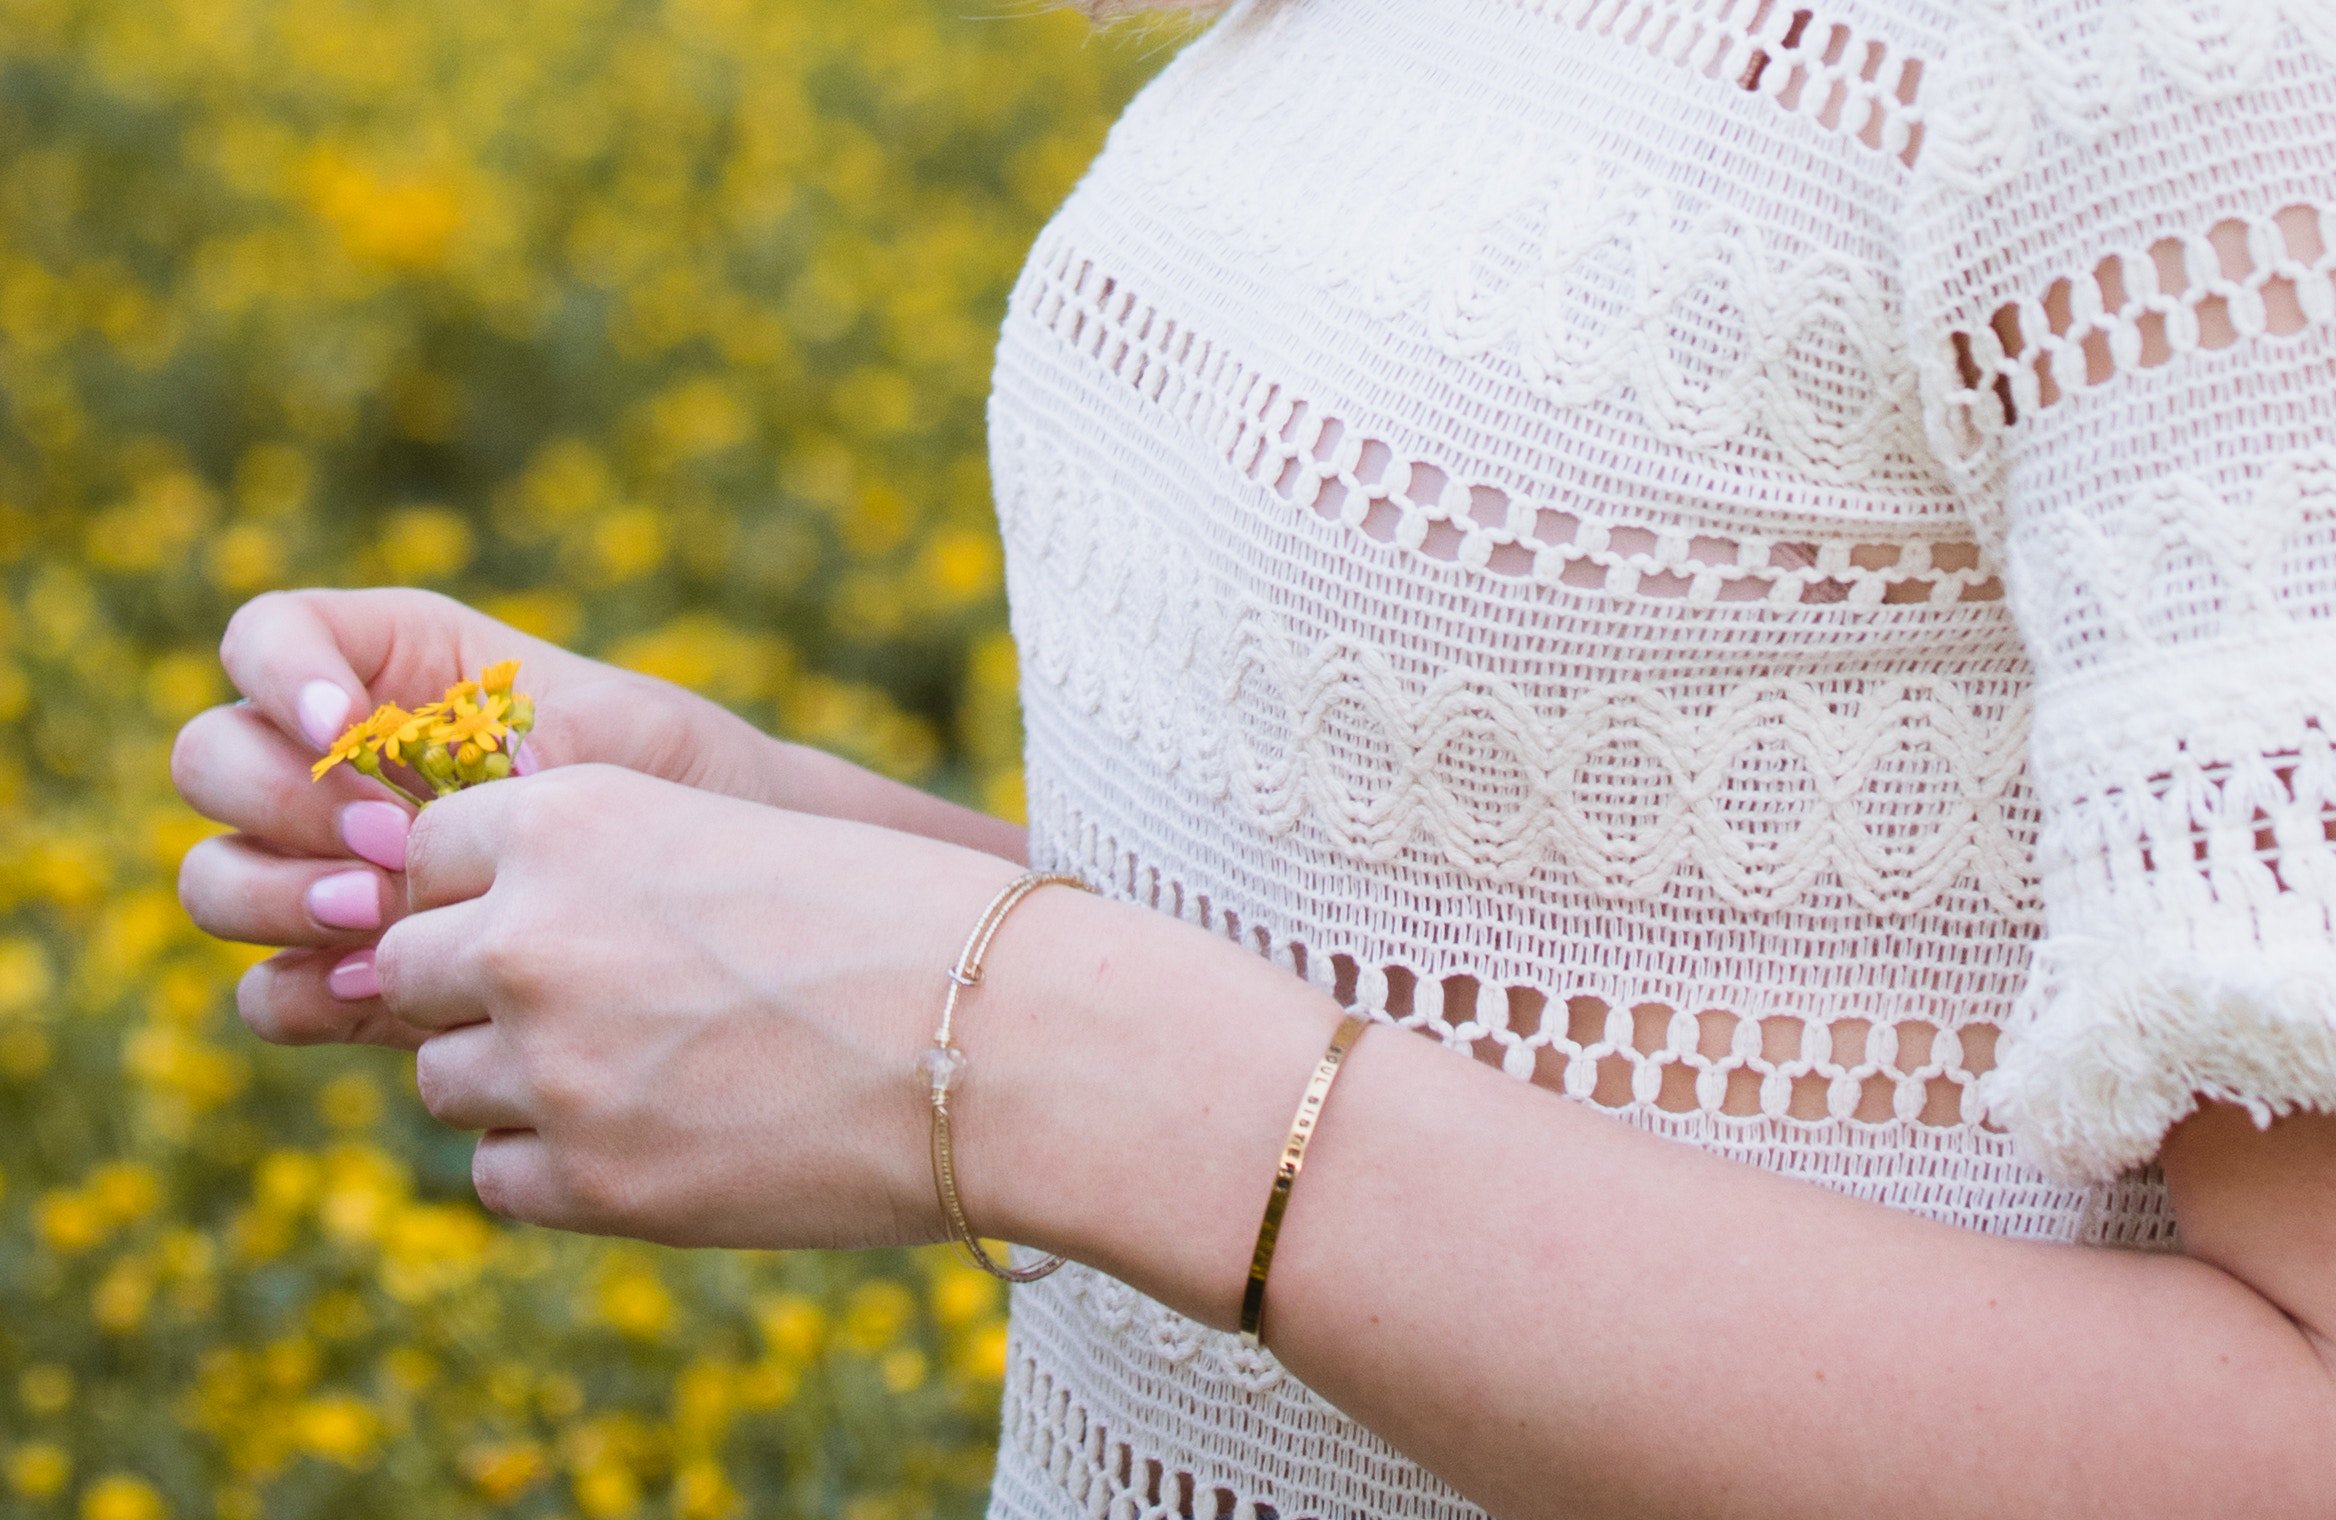 Mulher com blusa branca de renda, segurando pequenas flores amarelas.